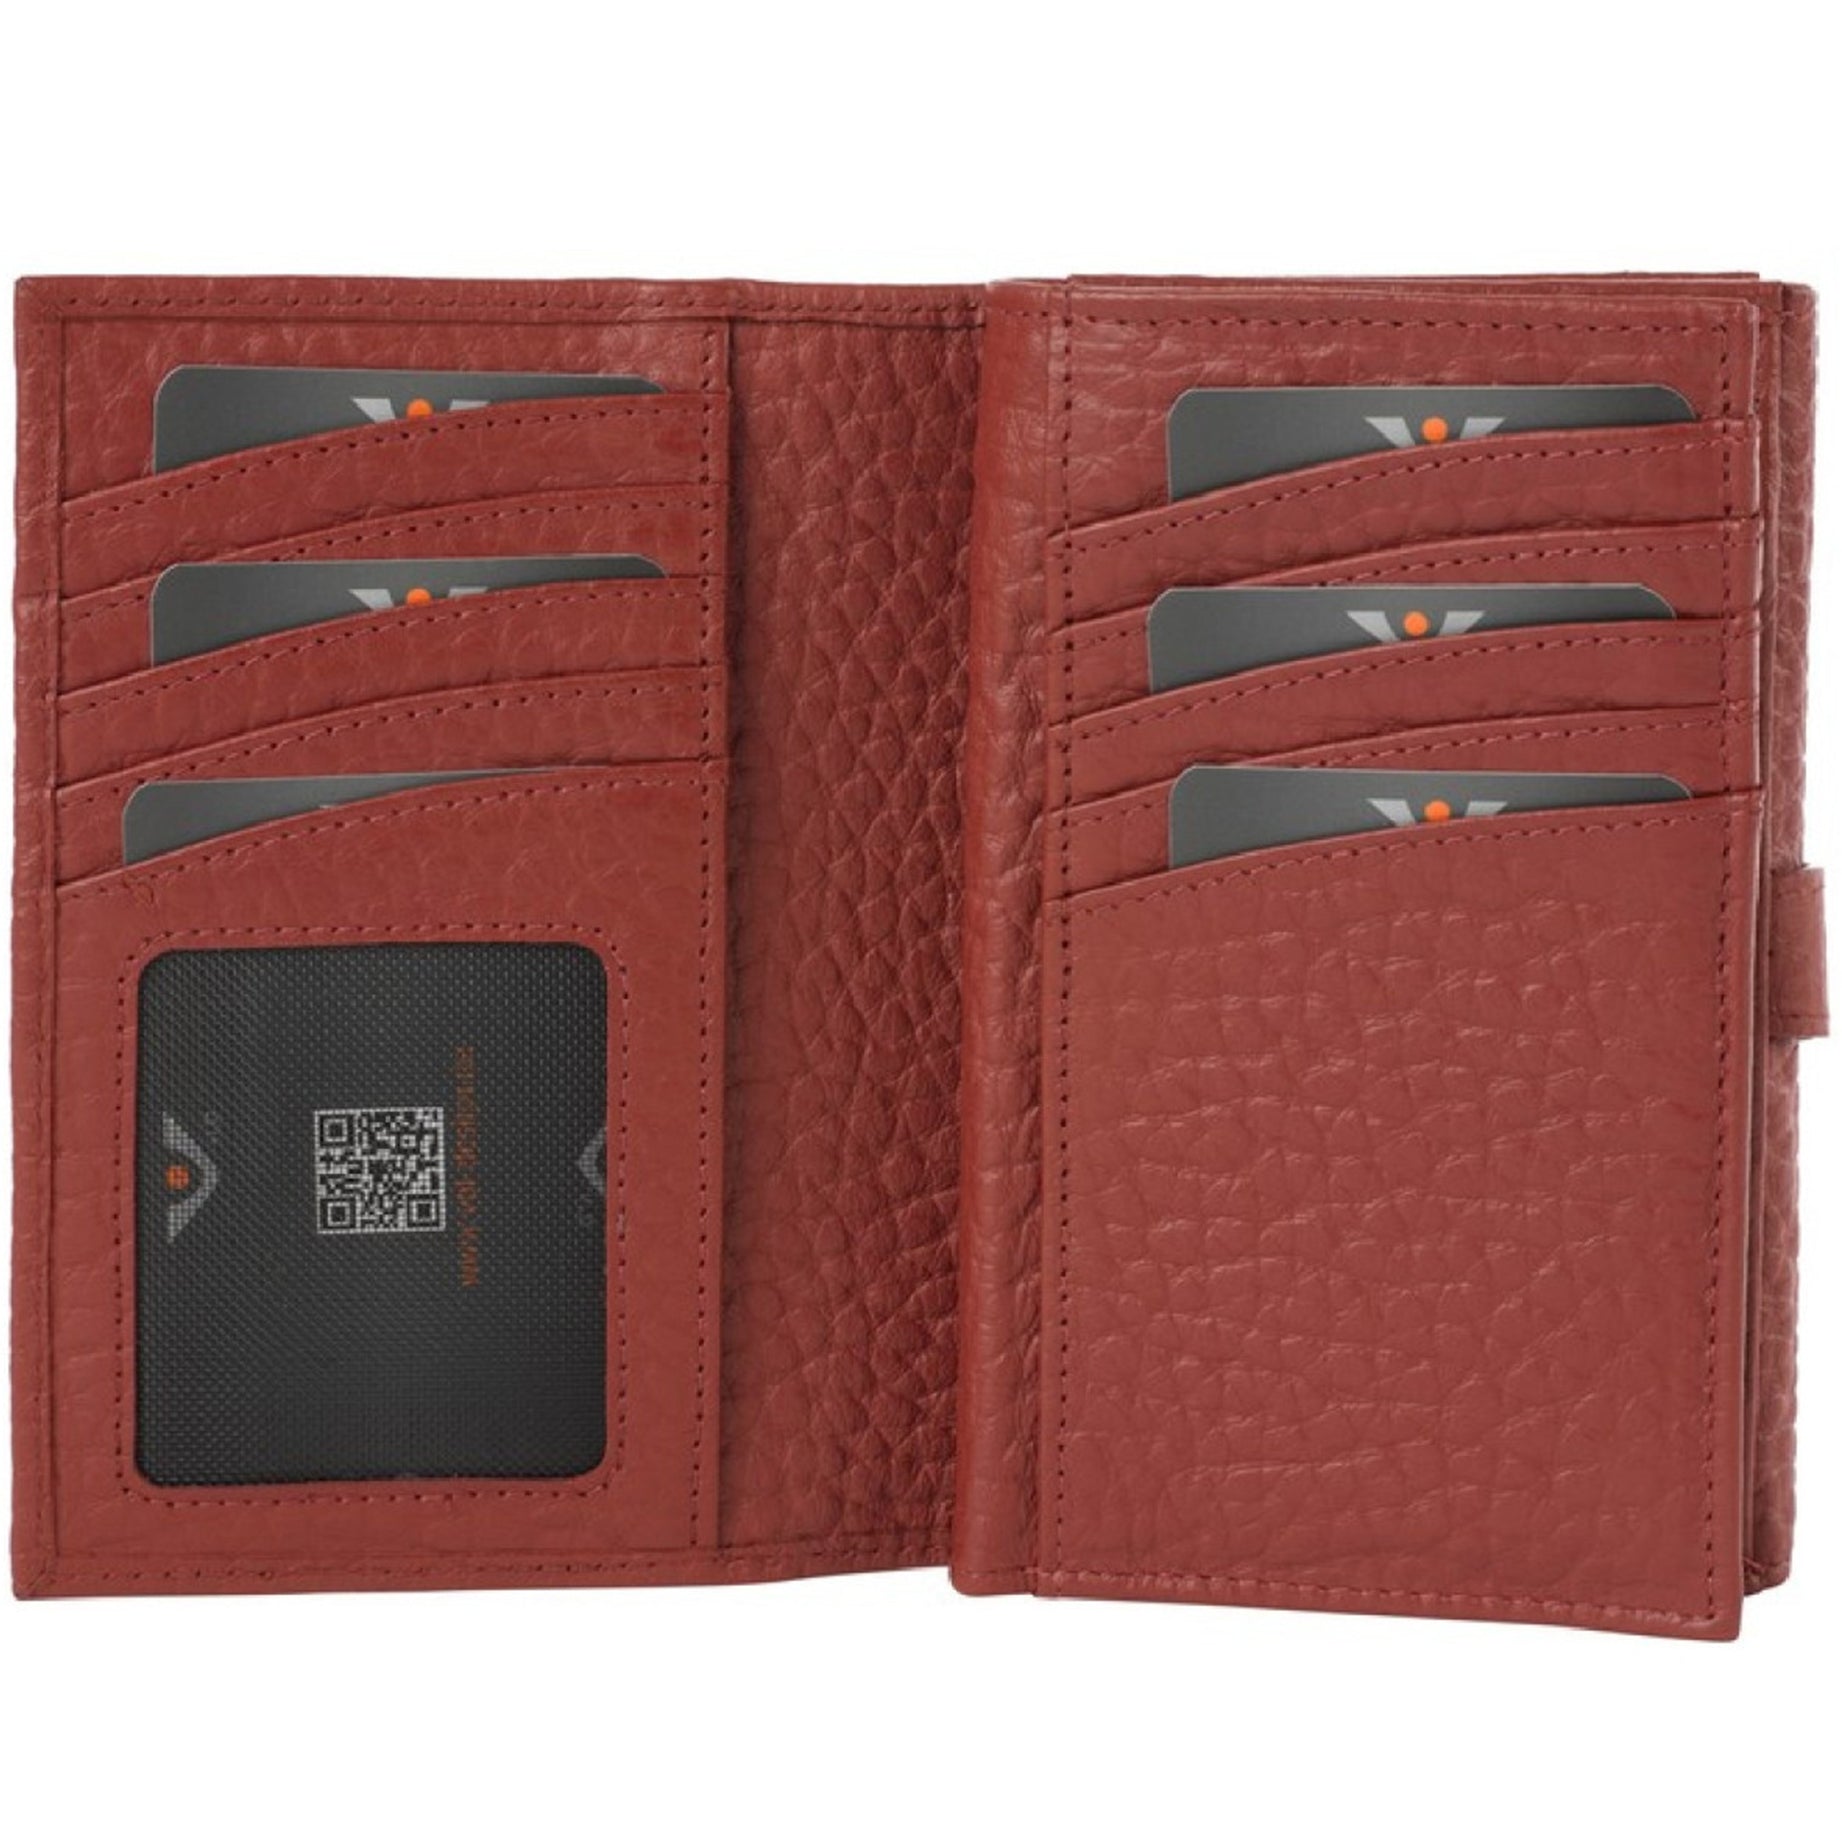 VOi-Design Hirsch Brenna women's wallet 15 cm - garnet